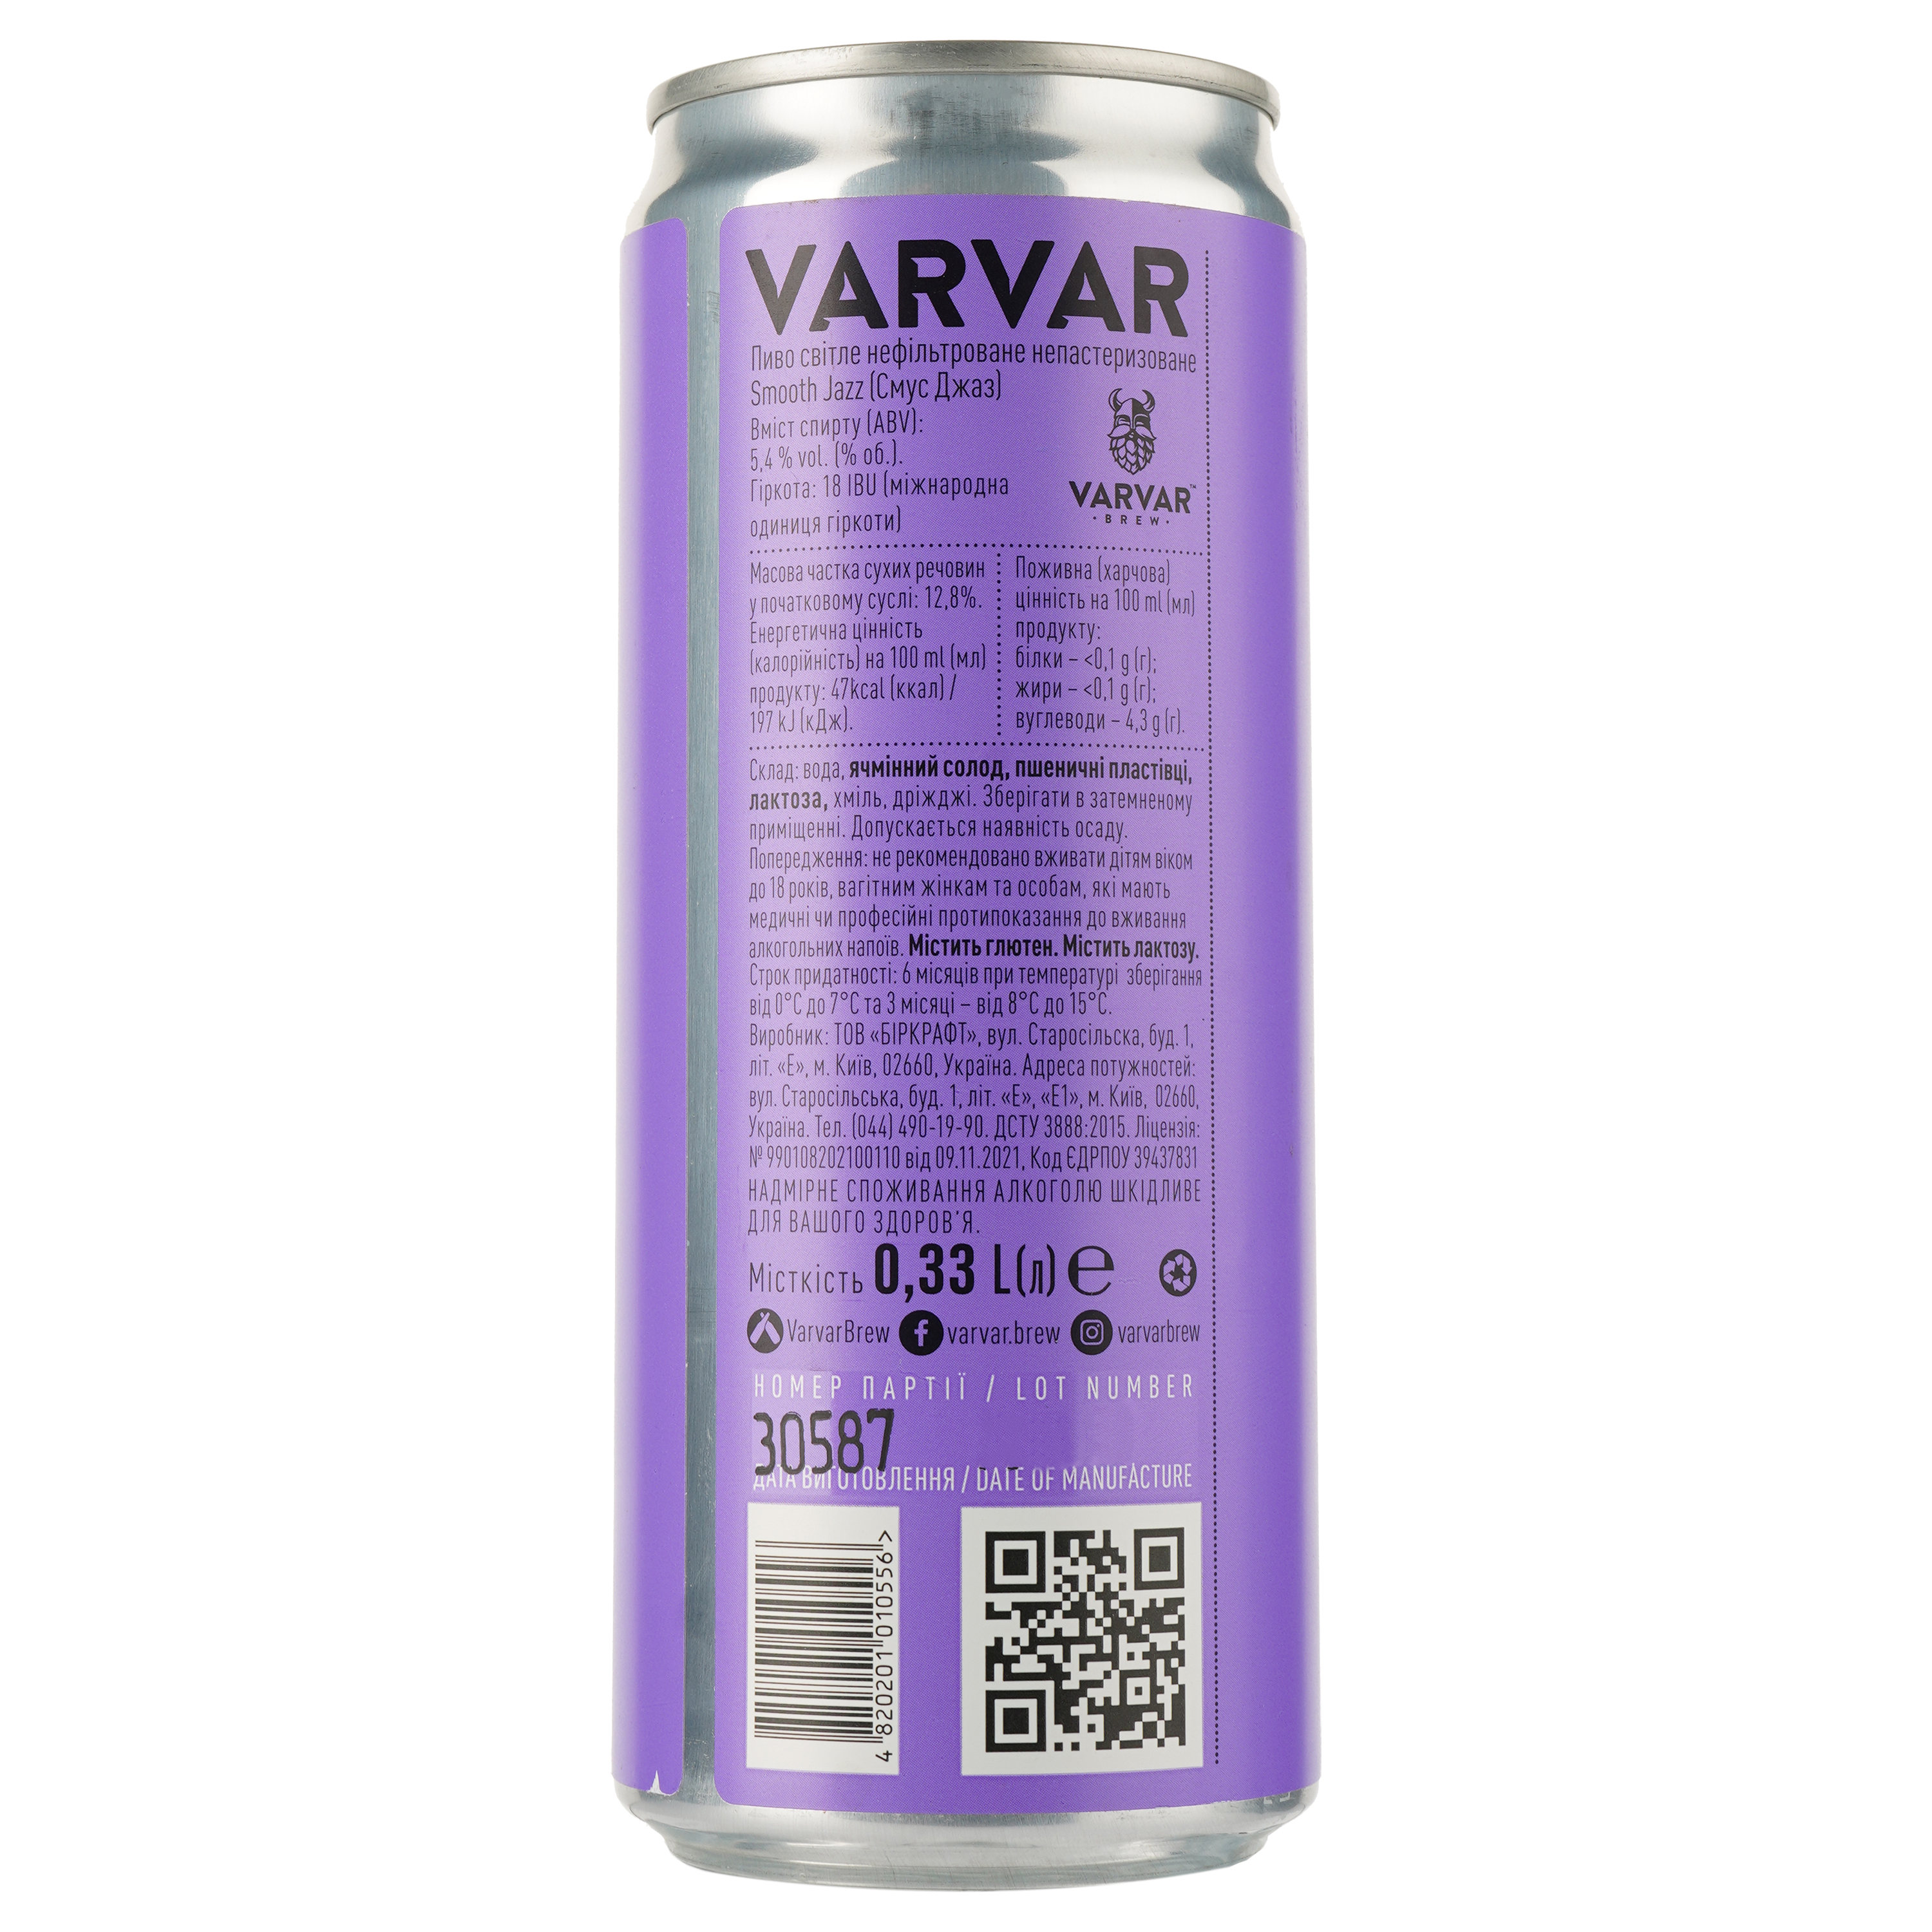 Пиво Varvar Smooth Jazz Pale Ale, светлое, нефильтрованное, 5,4%, ж/б, 0,33 л (823948) - фото 2